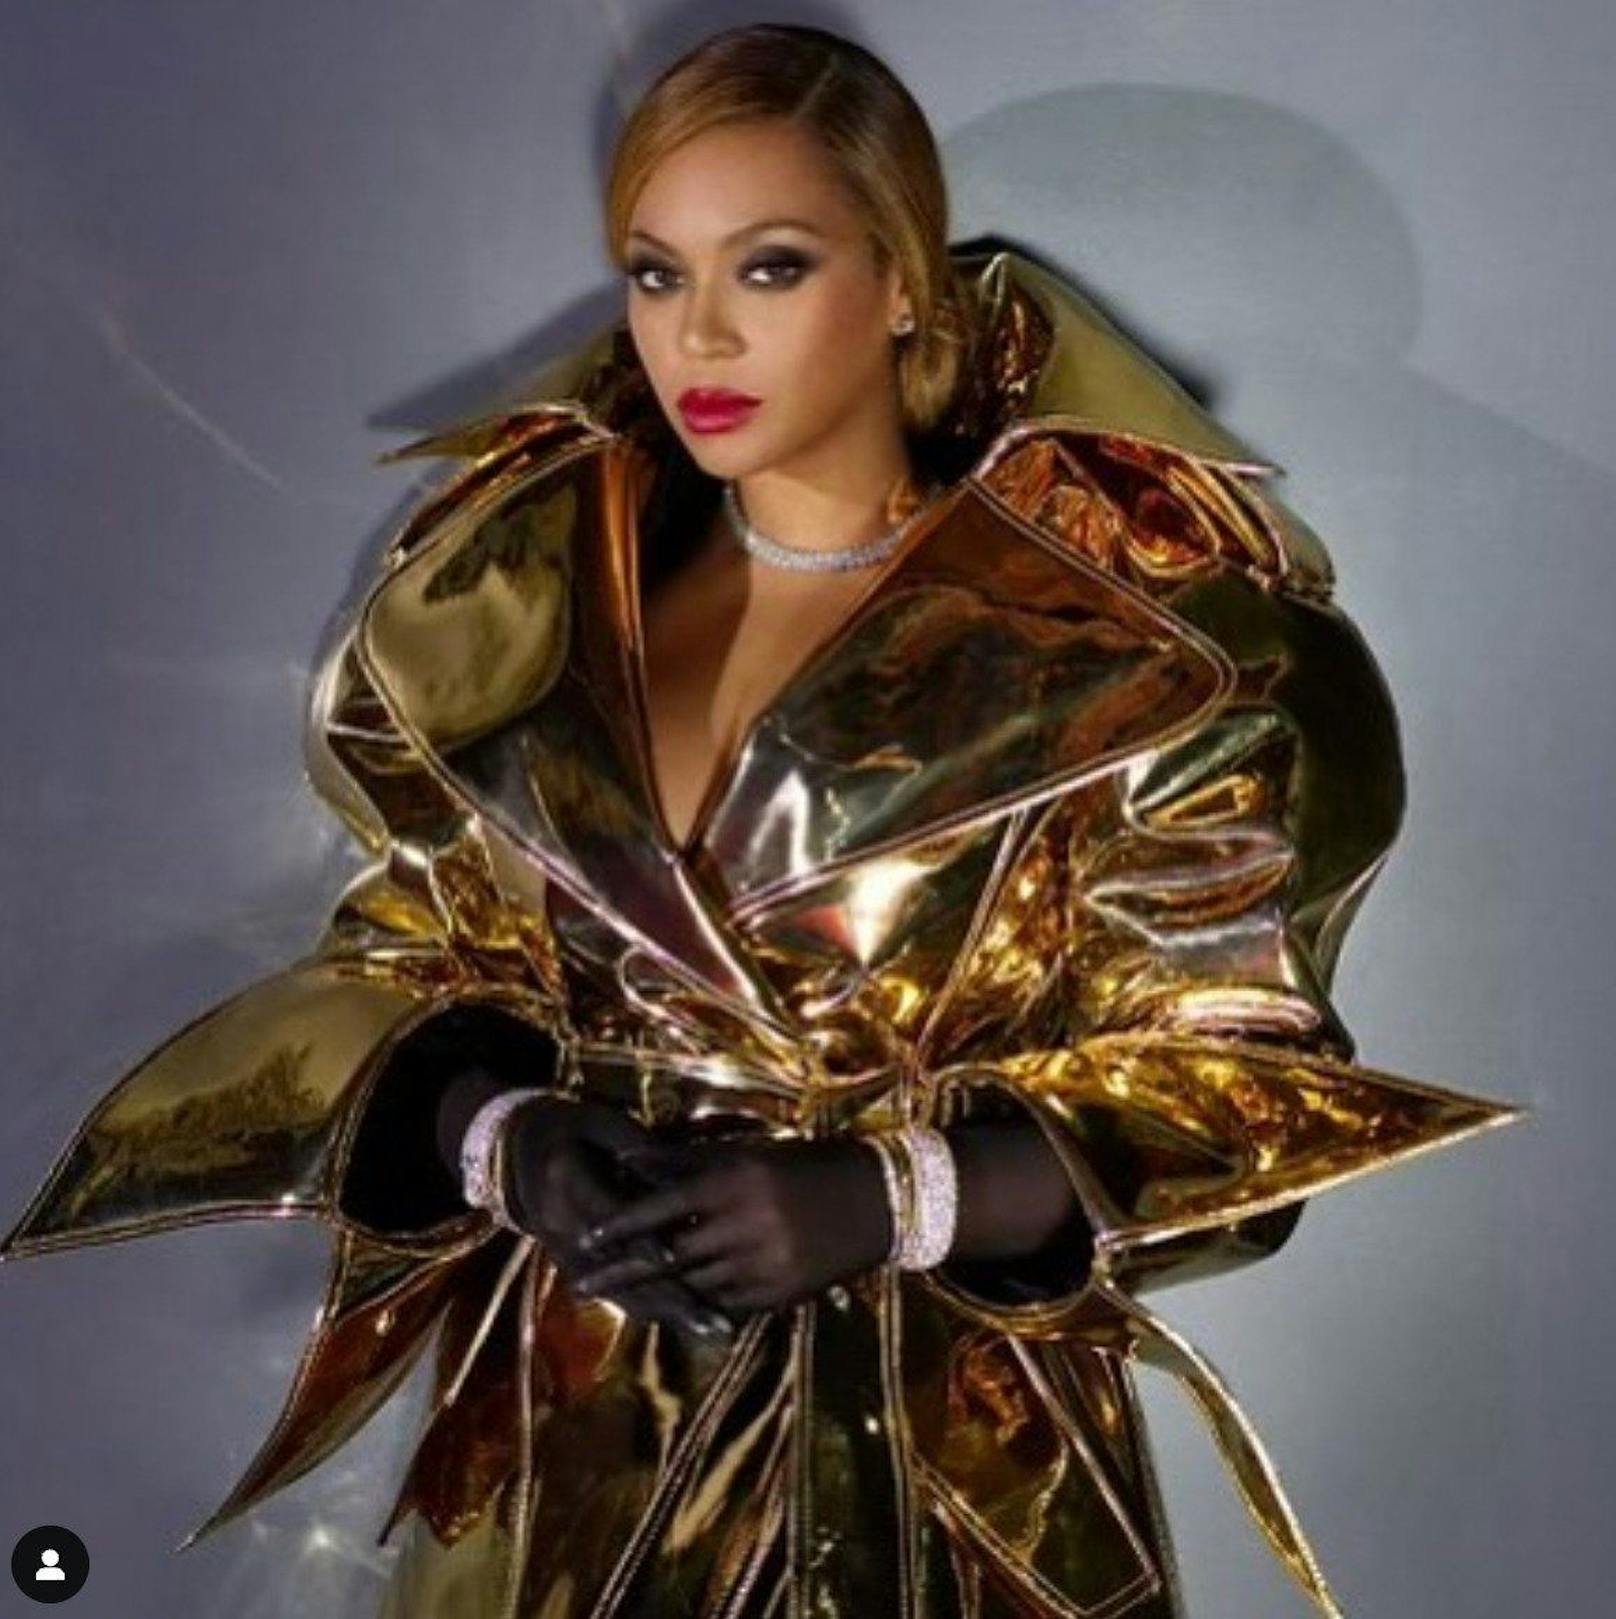 Die Diva des Pops in einem goldenen Mantel von Duran Latink.